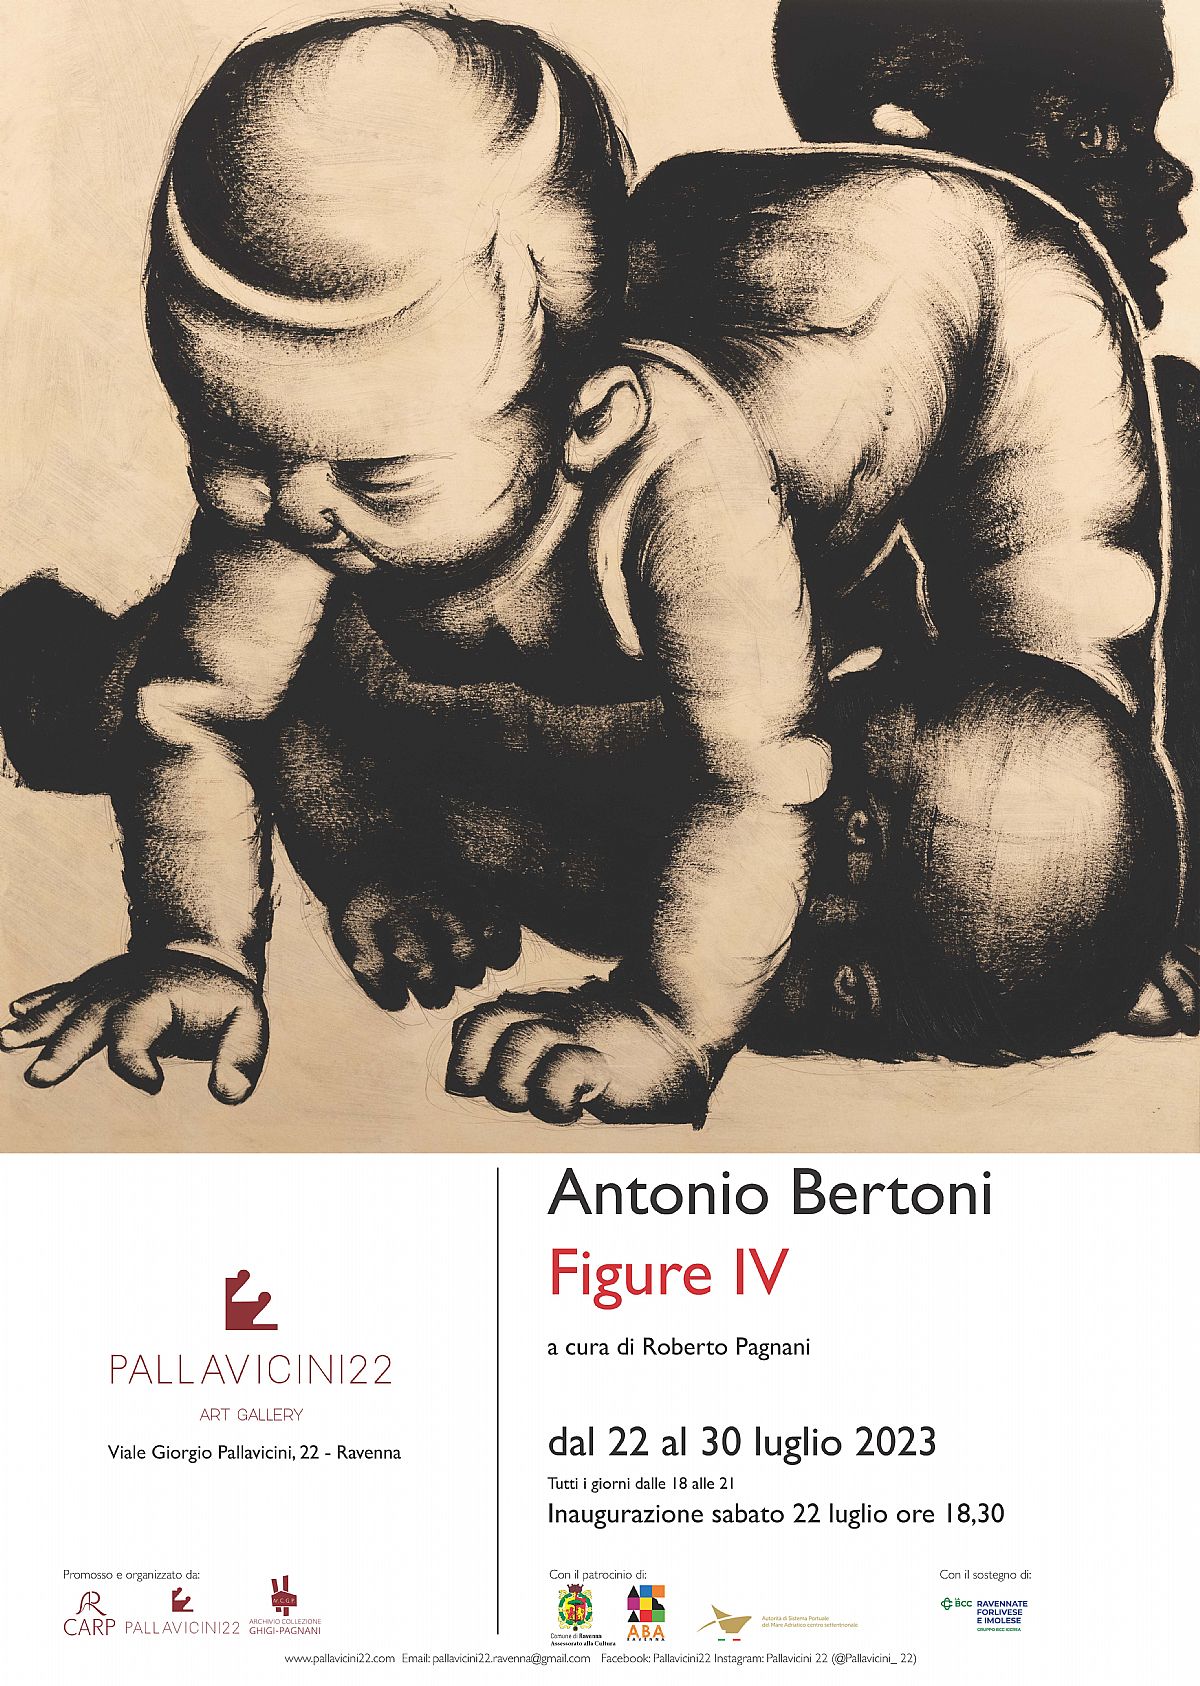 ANTONIO BERTONI - Figure IV